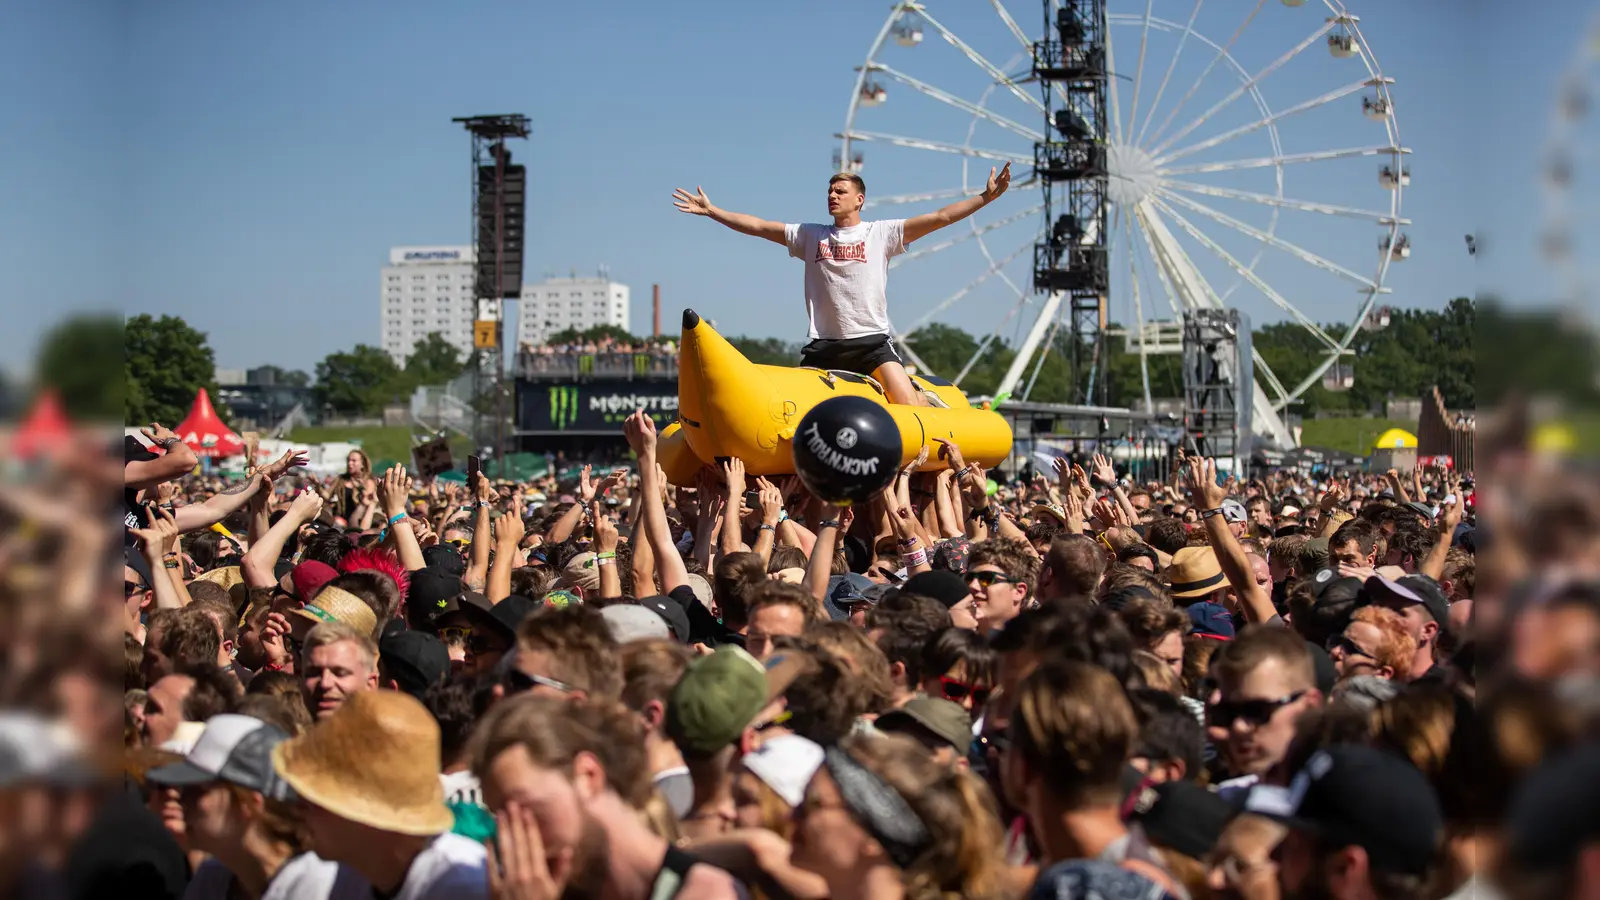 Ein Besucher des Open-Air-Festivals „Rock im Park” wird von anderen Besuchern während einem Konzert auf einer aufblasbaren Banane über die Menschenmenge getragen. (Archivbild: Daniel Karmann)